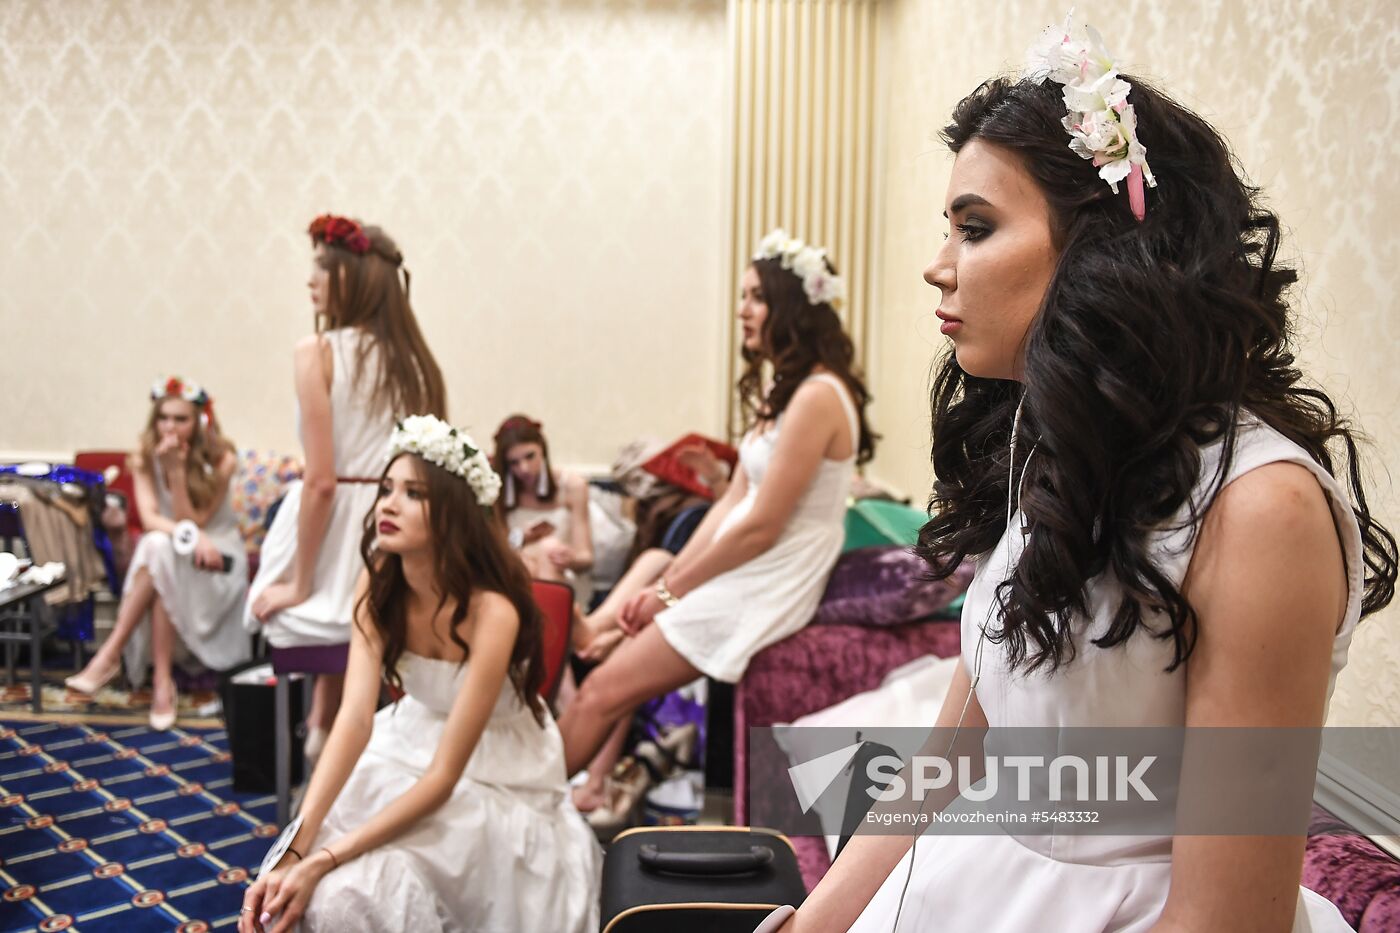 2018 Russian Beauty pageant final